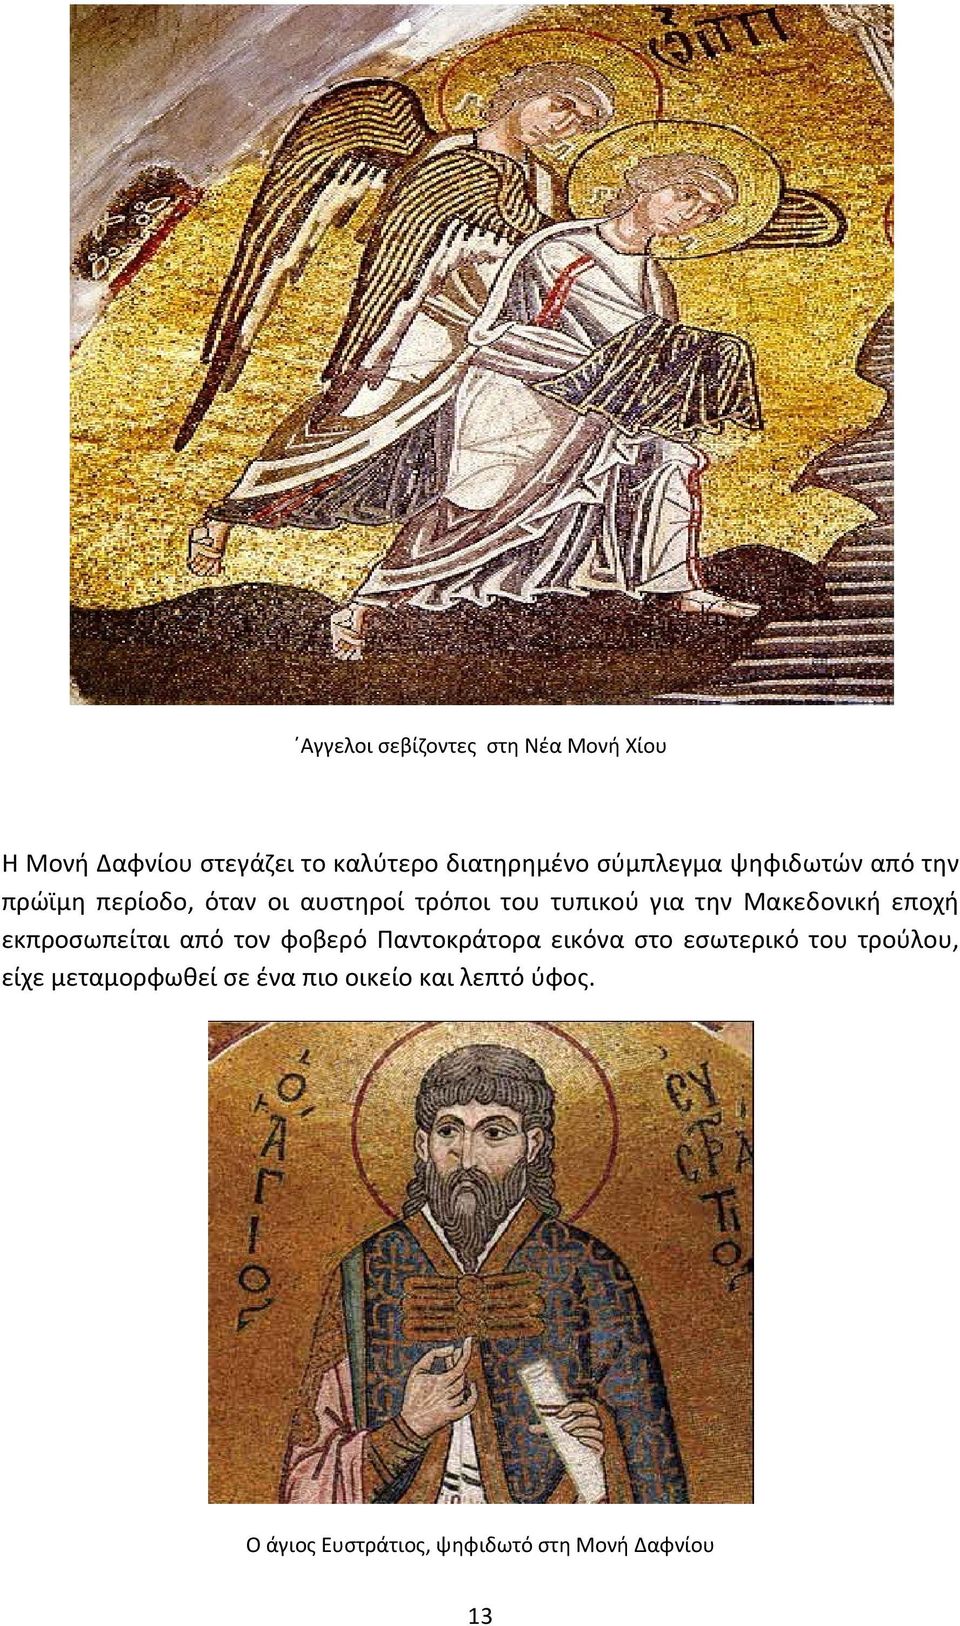 Μακεδονική εποχή εκπροσωπείται από τον φοβερό Παντοκράτορα εικόνα στο εσωτερικό του